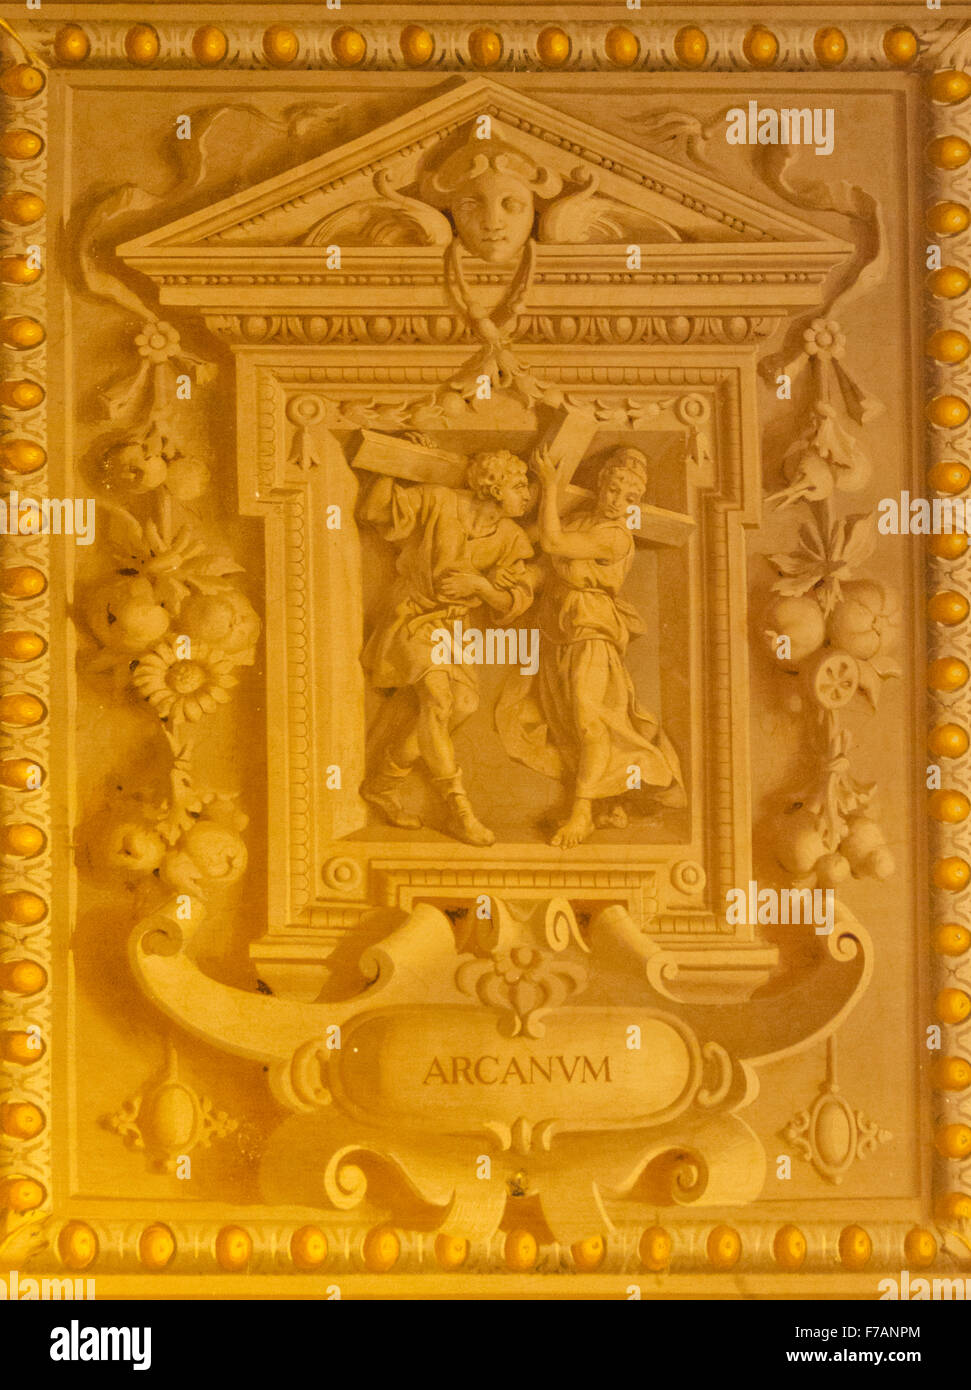 Ici, c'est une peinture sur le plafond dans les Musées du Vatican qui ressemble à du plâtre en 3 dimensions, mais est en fait une peinture. Banque D'Images